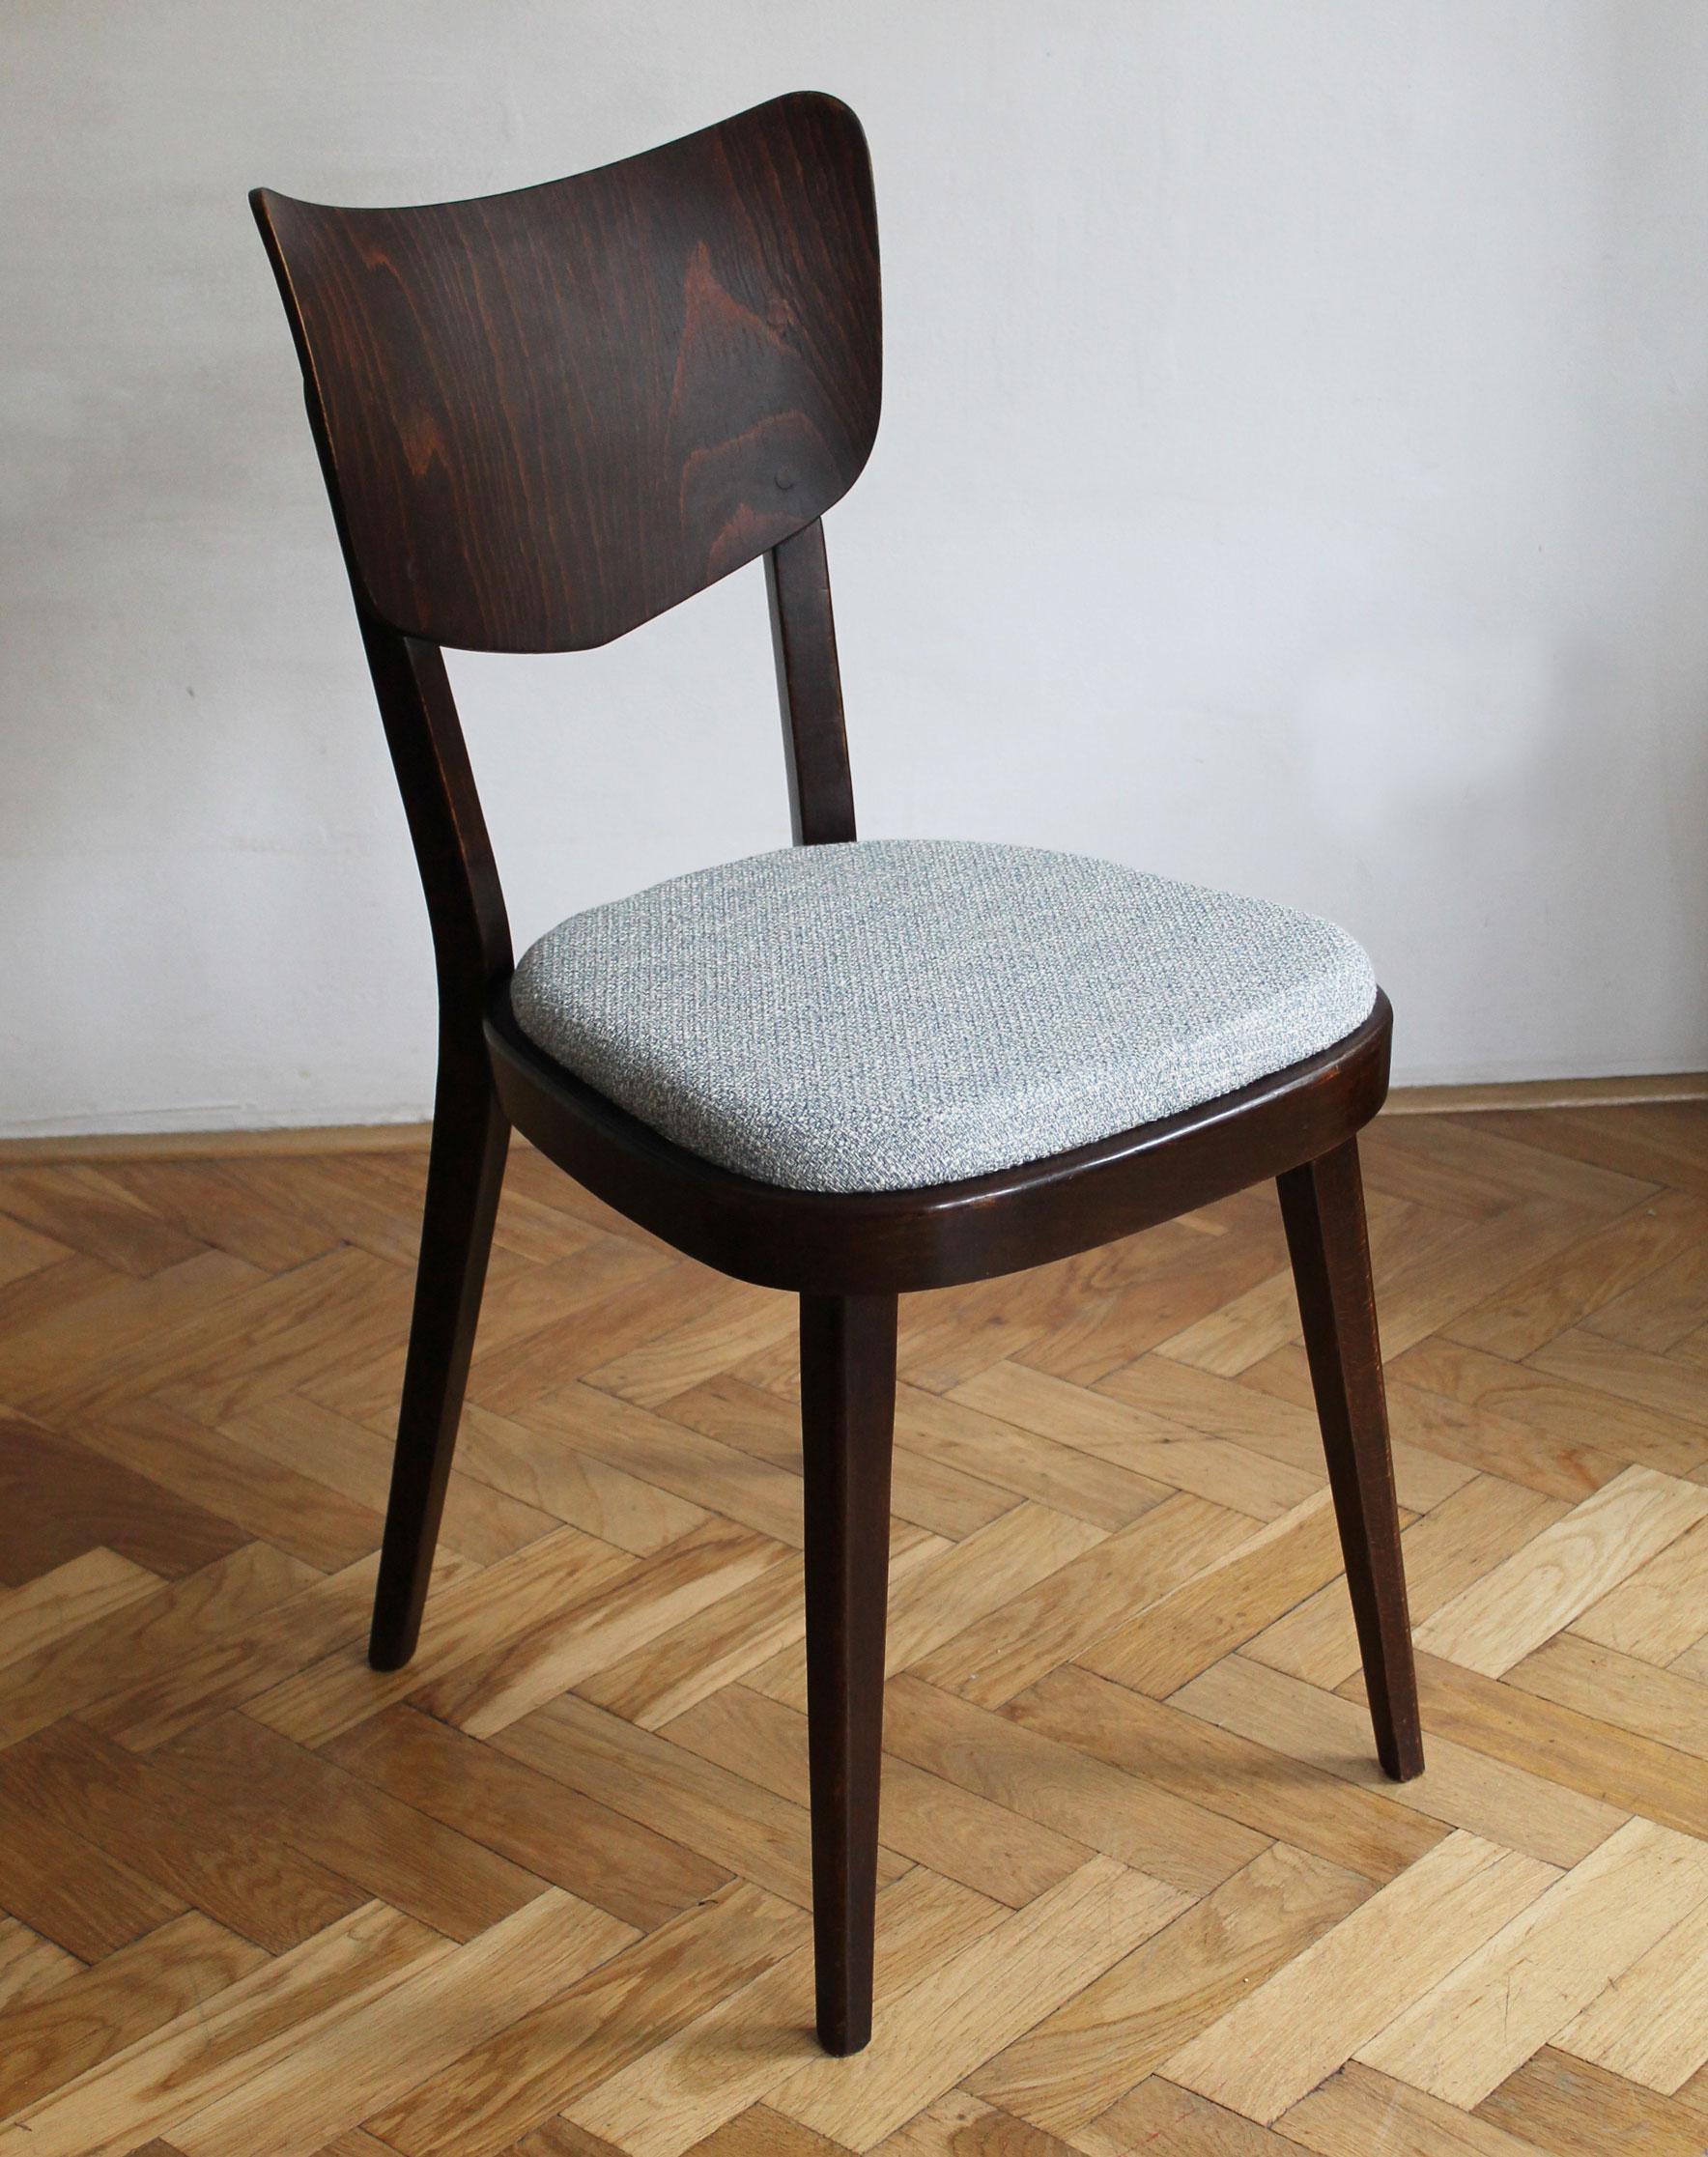 Il s'agit d'un ensemble de chaises de salle à manger Mid Century Modern, conçu et produit par TON Furniture Company dans les années 1960 en Tchécoslovaquie. 

À la suite de la division de l'Europe entre l'Ouest et l'Est après la guerre, la société